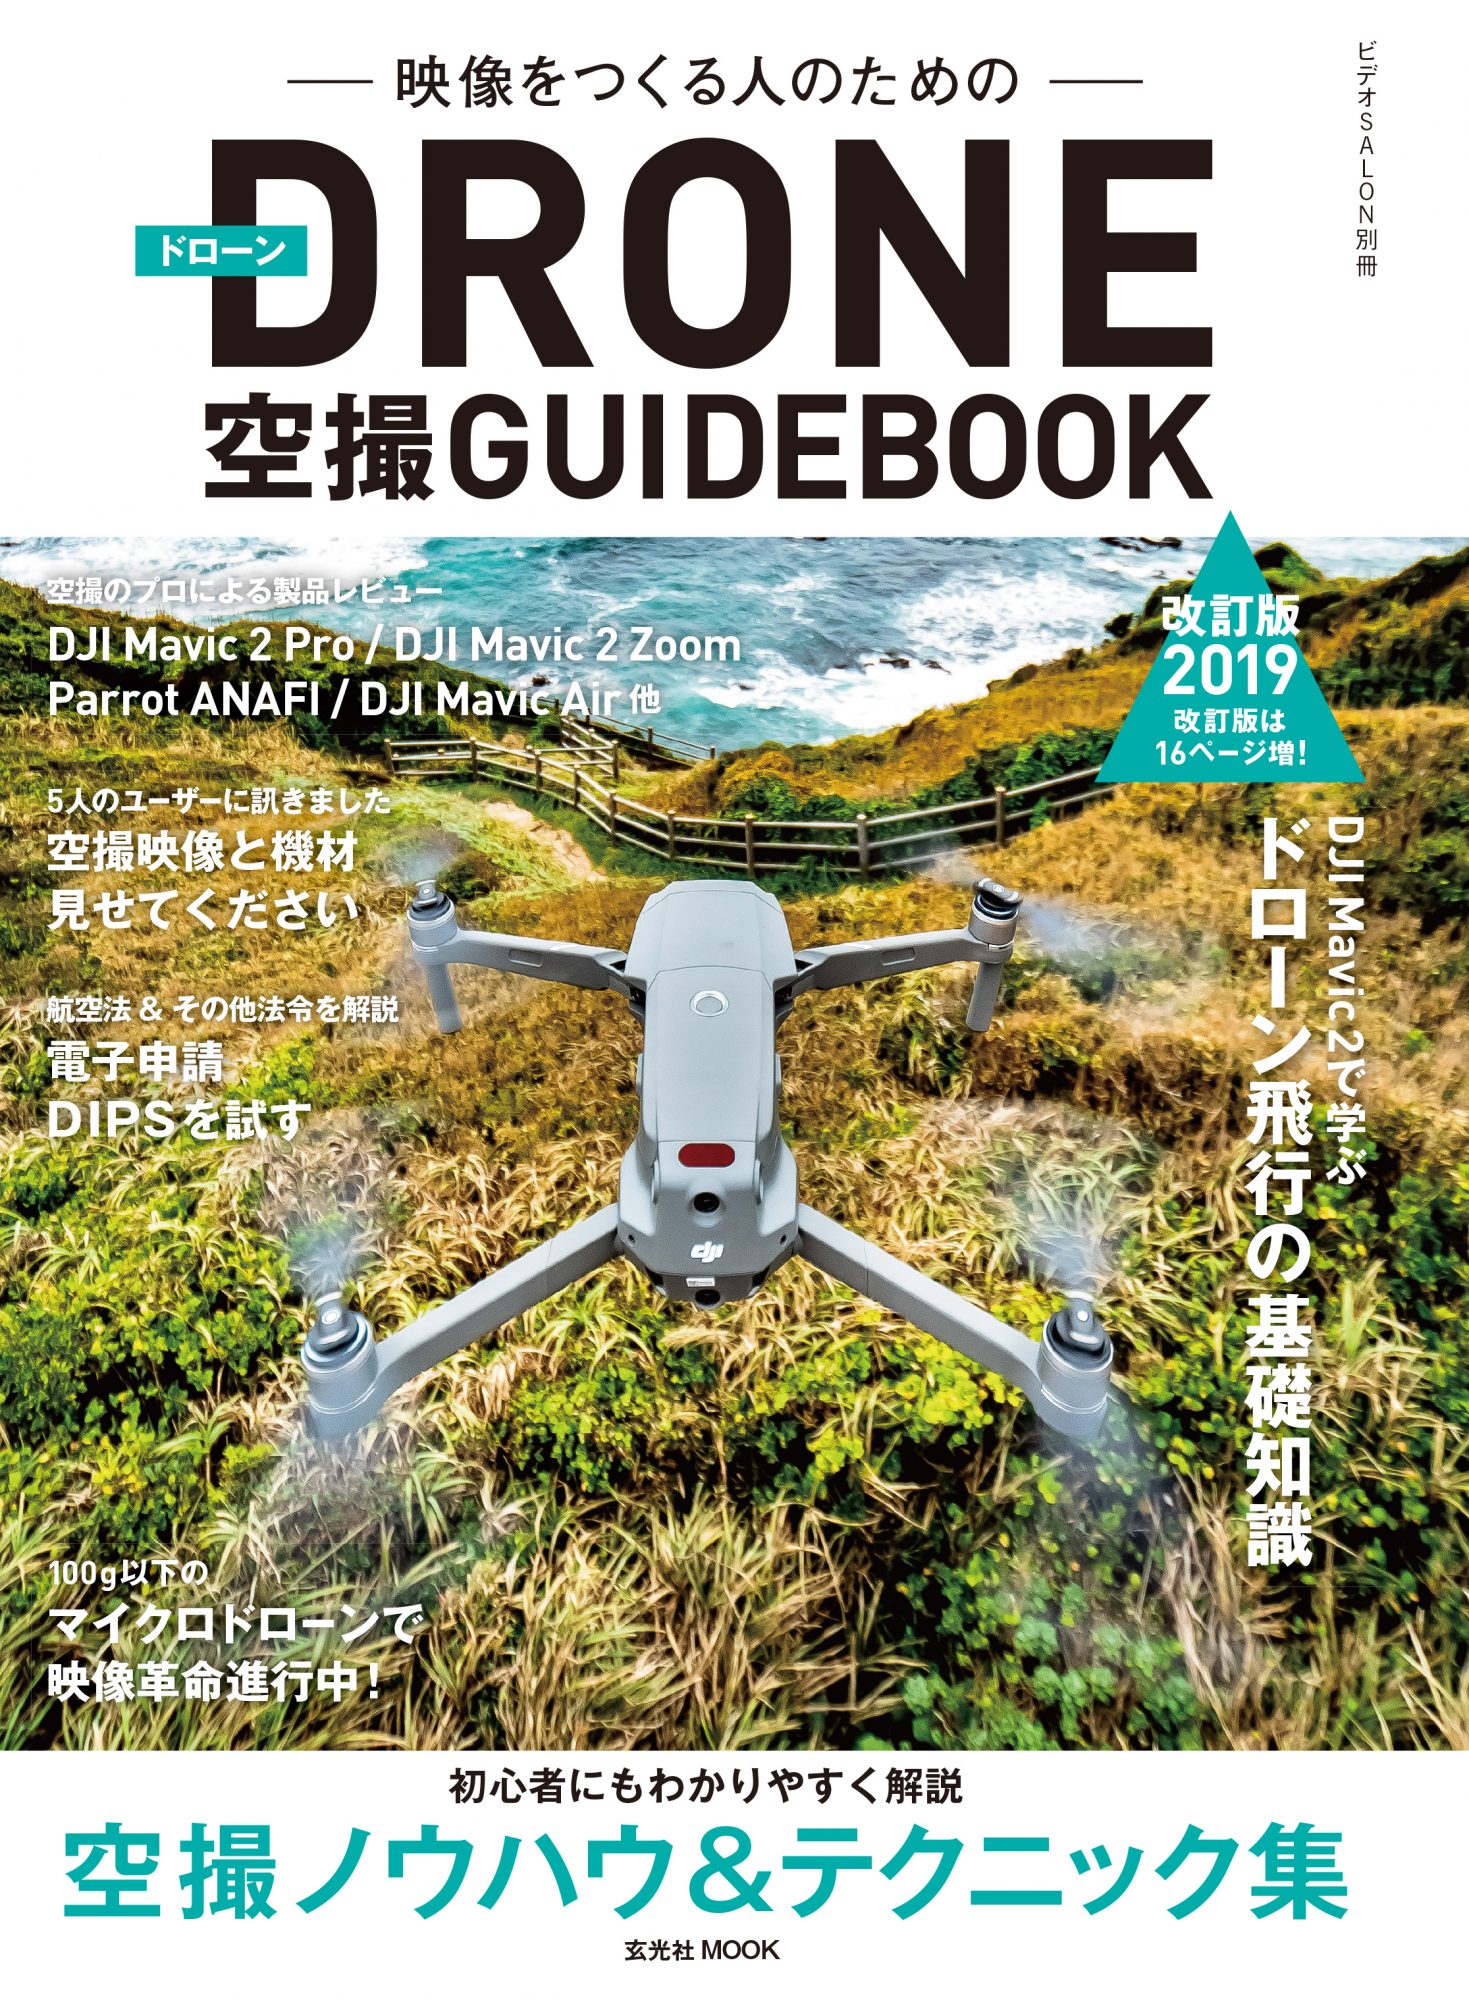 新刊MOOK】空撮の基本から実践的なテクニックを学べる「DRONE空撮